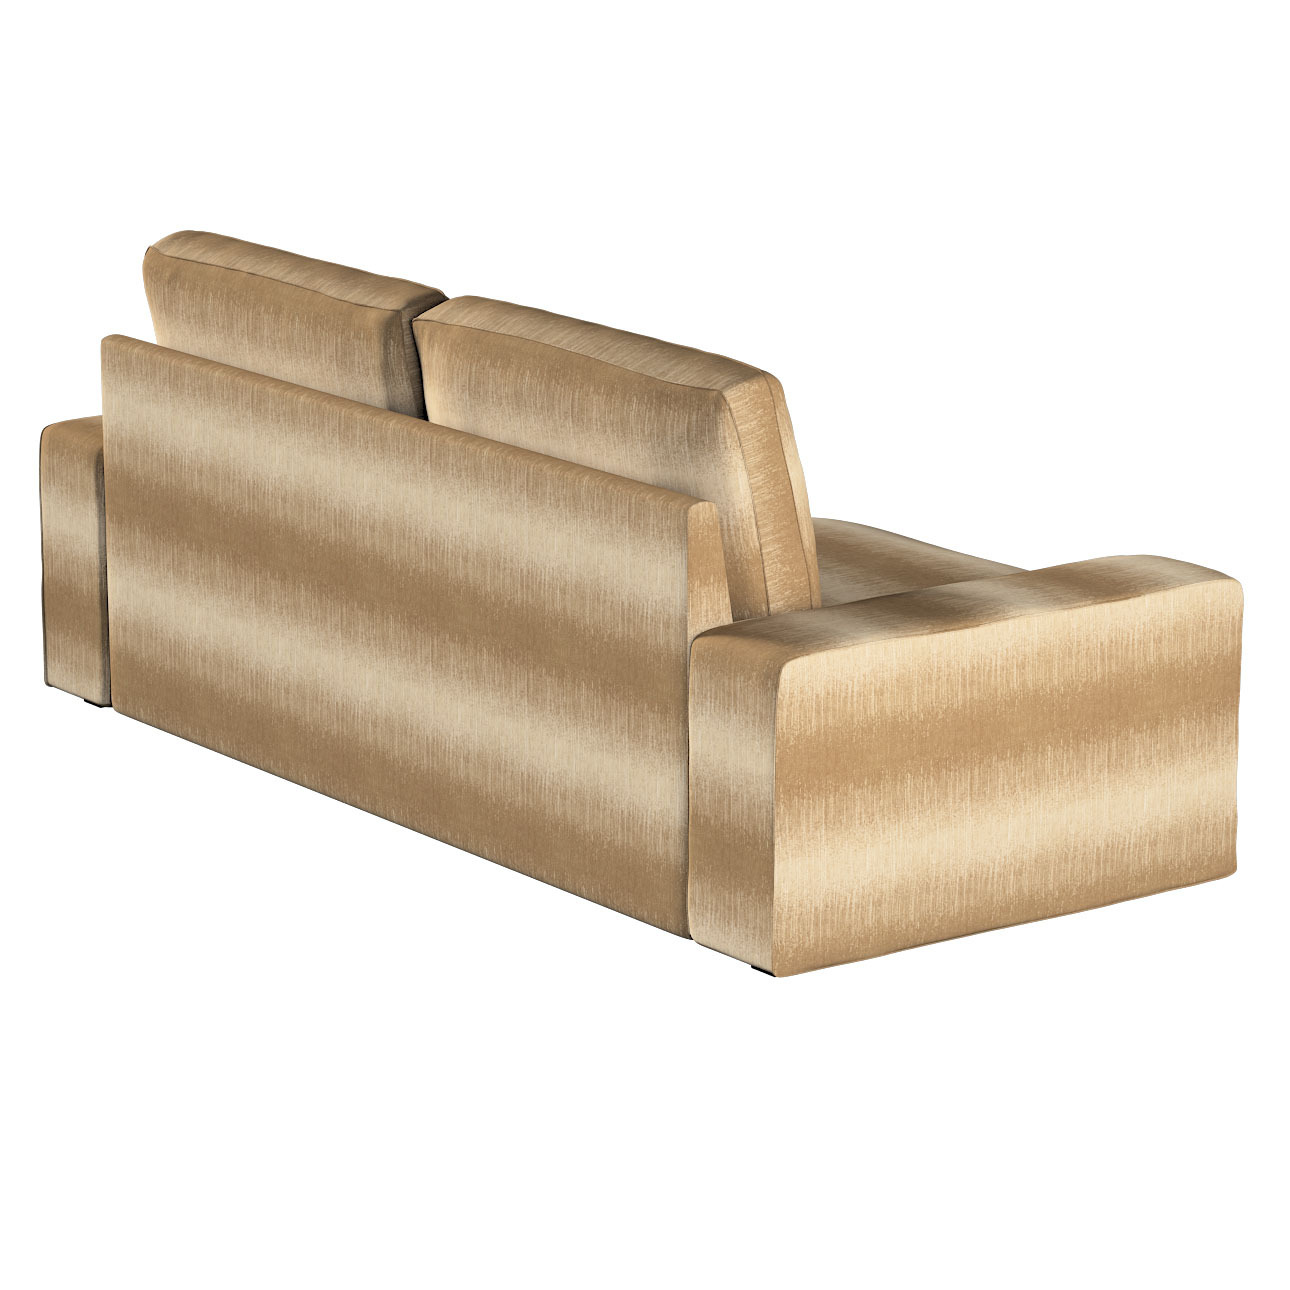 Bezug für Kivik 3-Sitzer Sofa, creme-beige, Bezug für Sofa Kivik 3-Sitzer, günstig online kaufen